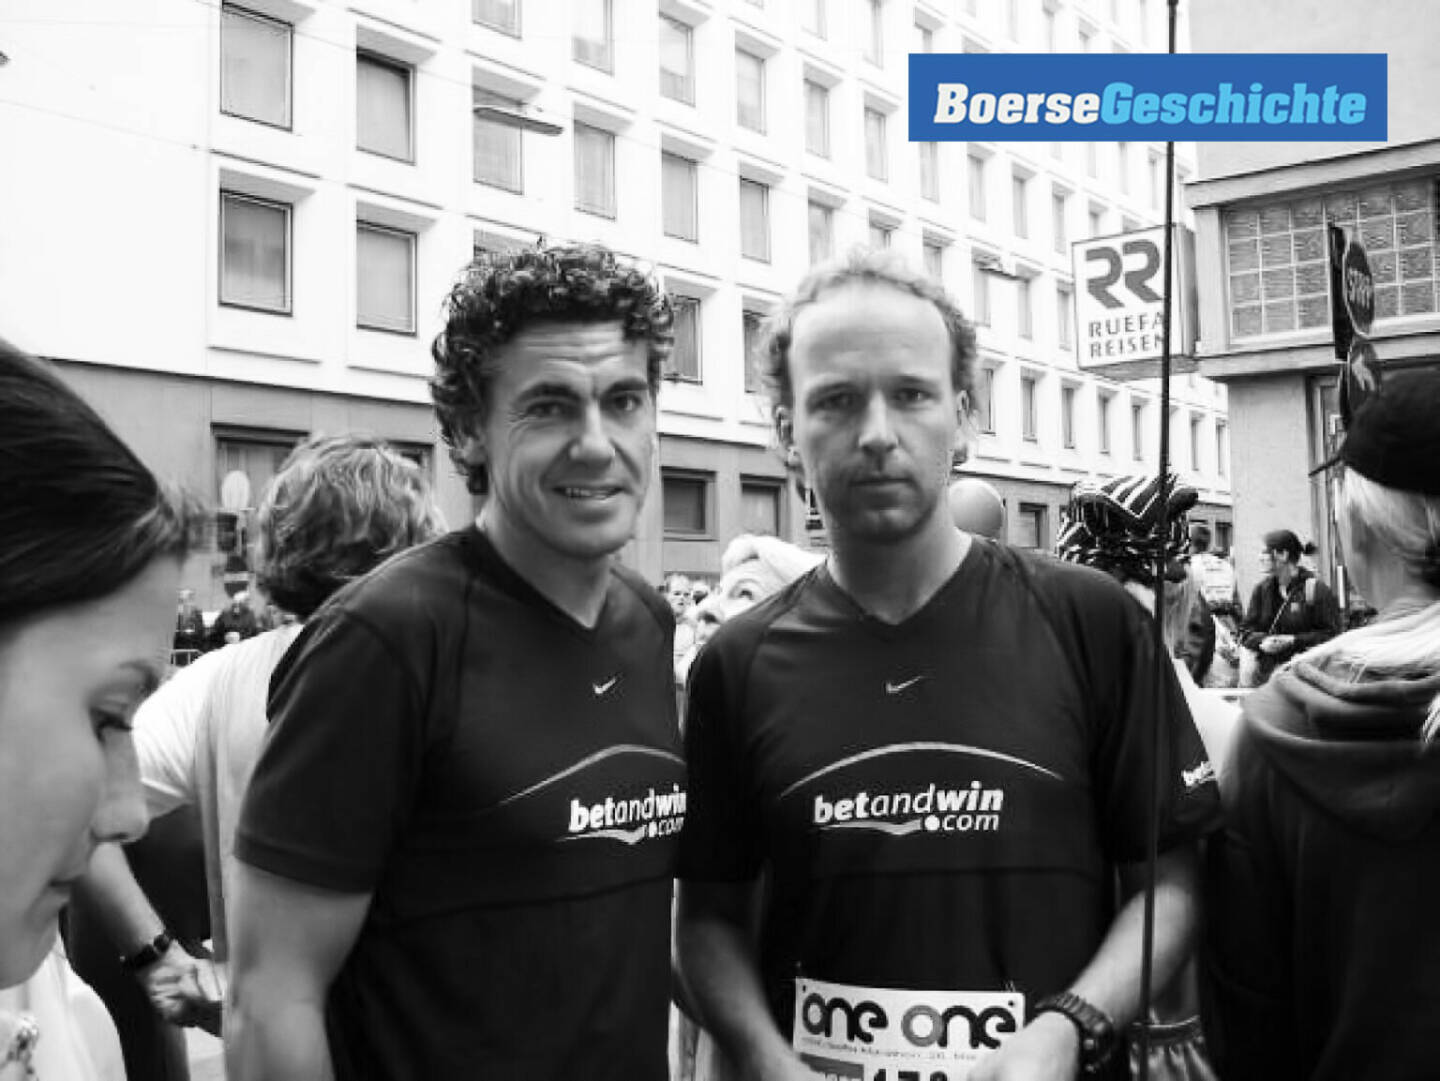 #boersegeschichte 2000: Michael Tojner und Christian Drastil beim Vienna City Marathon für betandwin.com